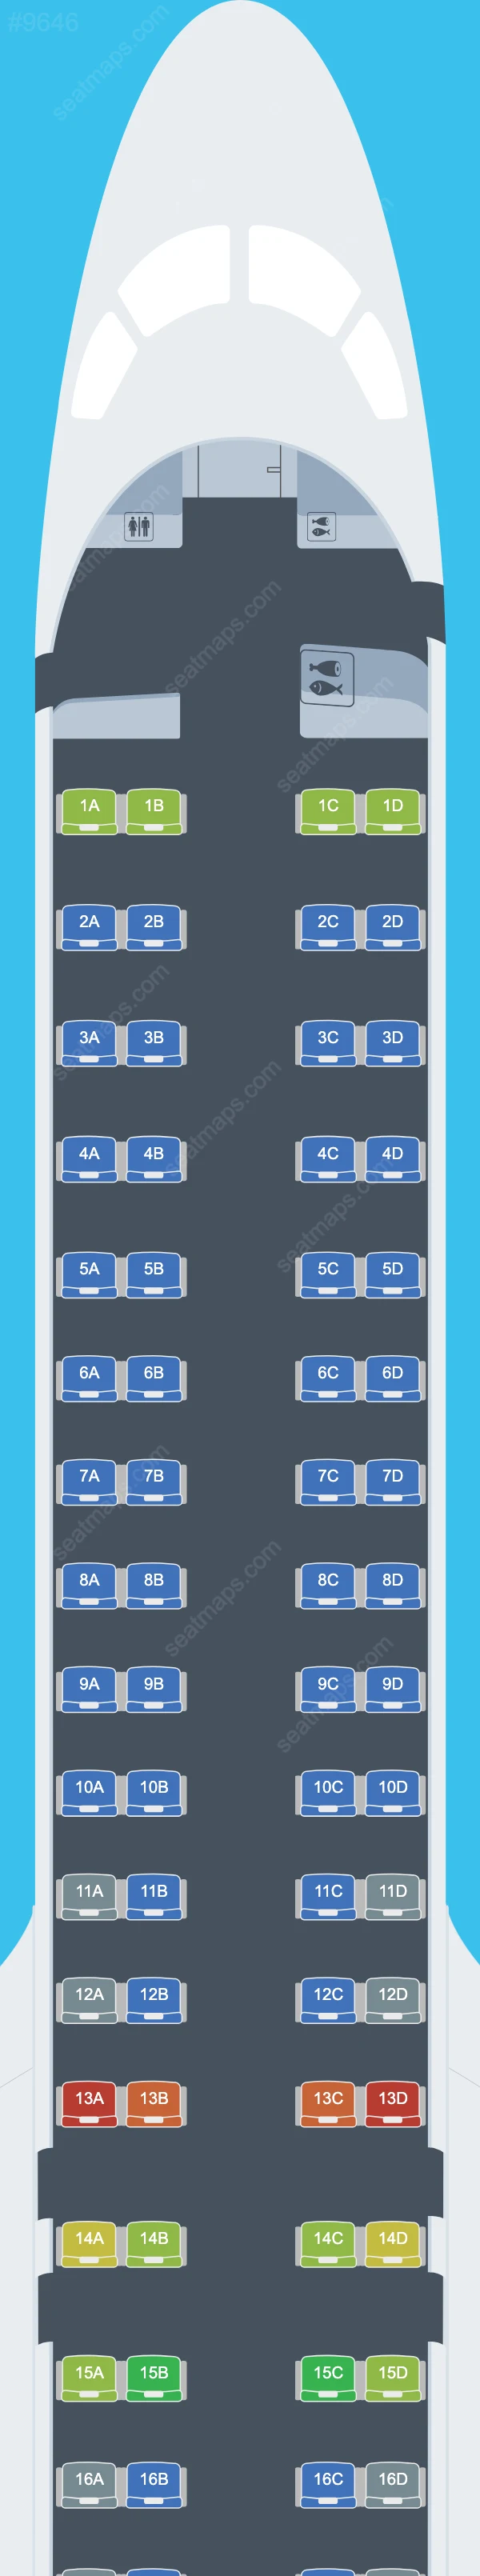 Azul Brazilian Airlines Embraer E195-E2 Mapas de assentos E195 E2